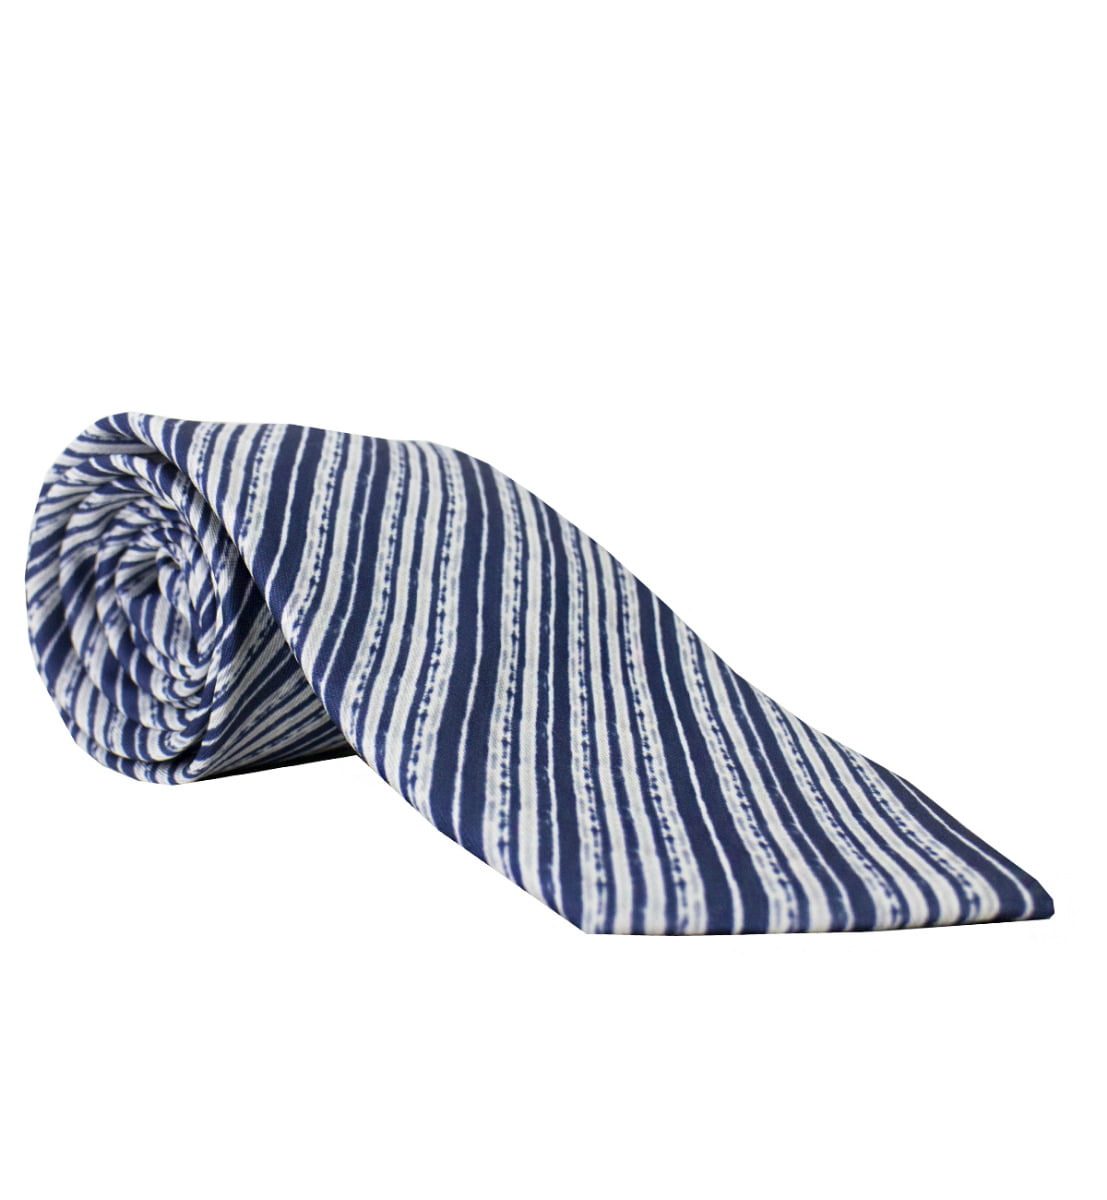 Cravatta a righe diagonali blu fantasia bianche compresa di pochette abbinata uomo